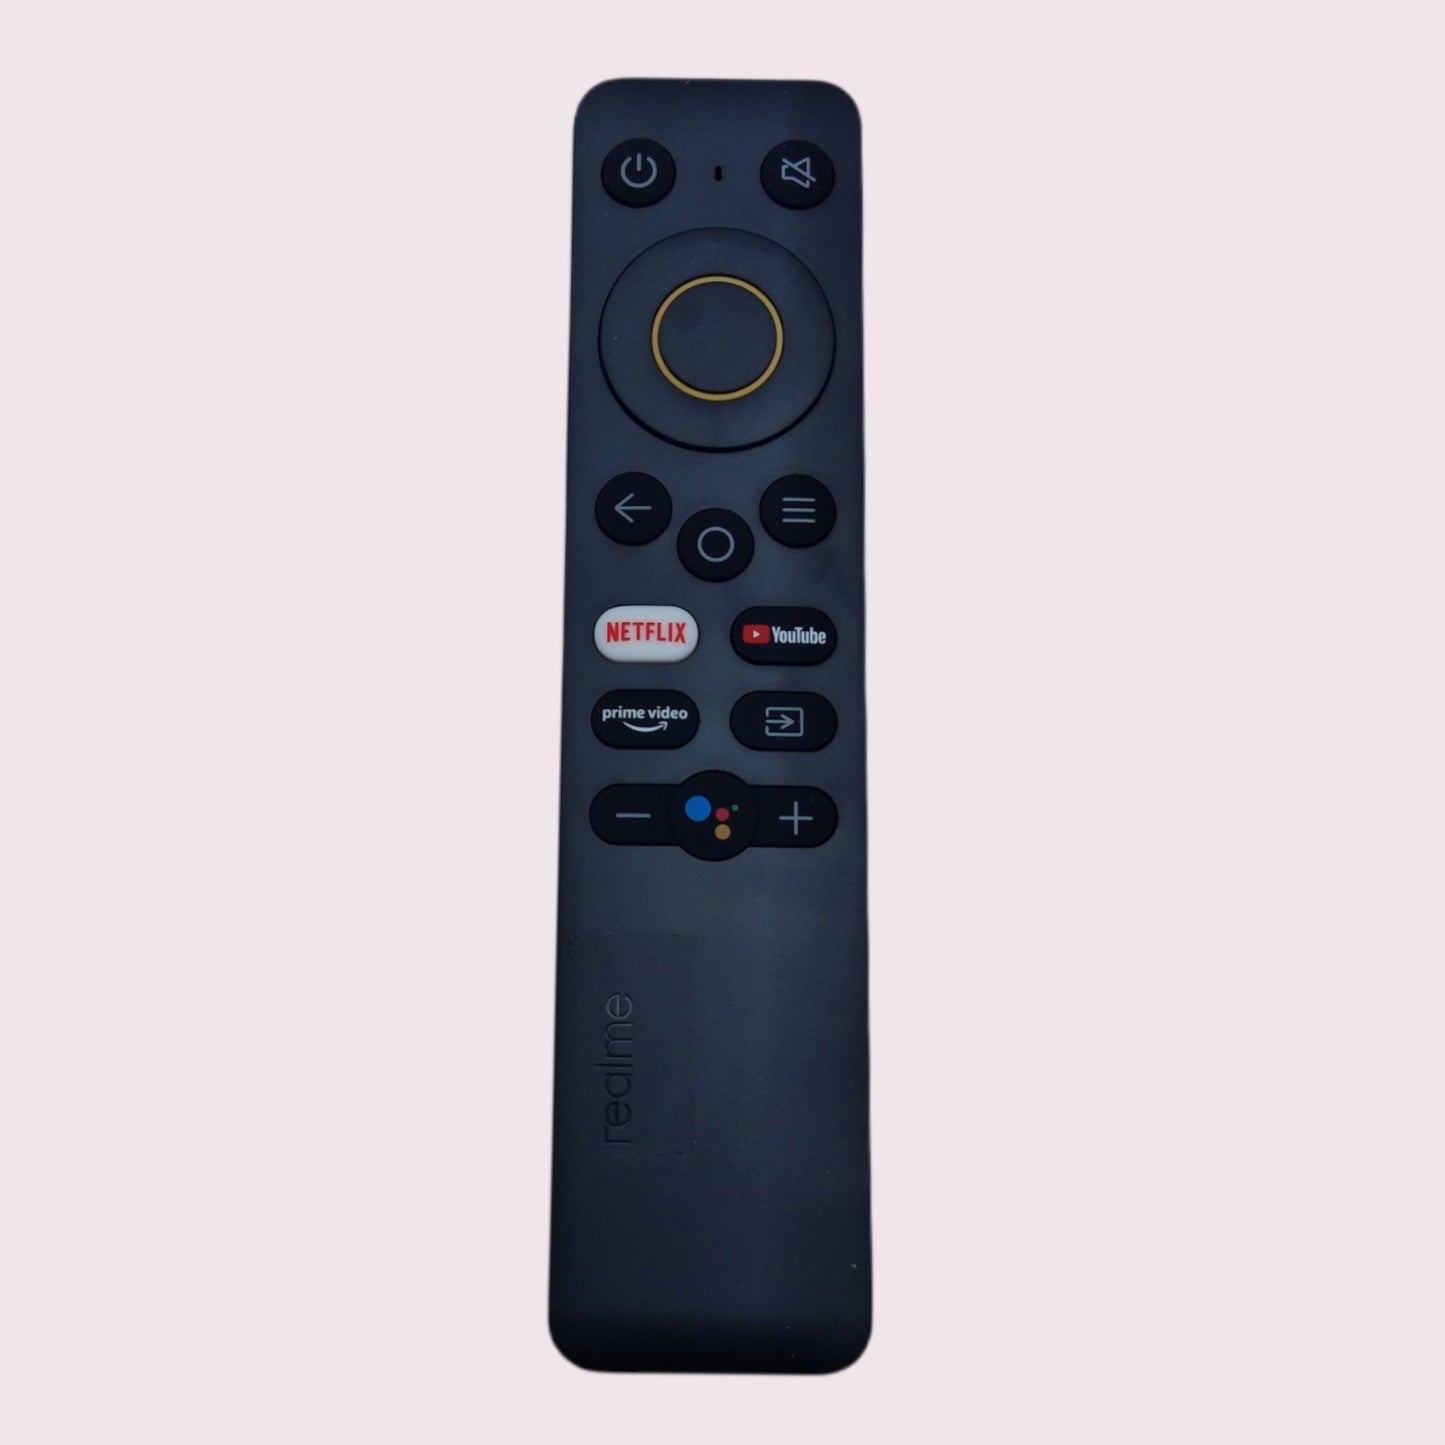 Realme Smart TV remote control Youtube,Netflix,prime video